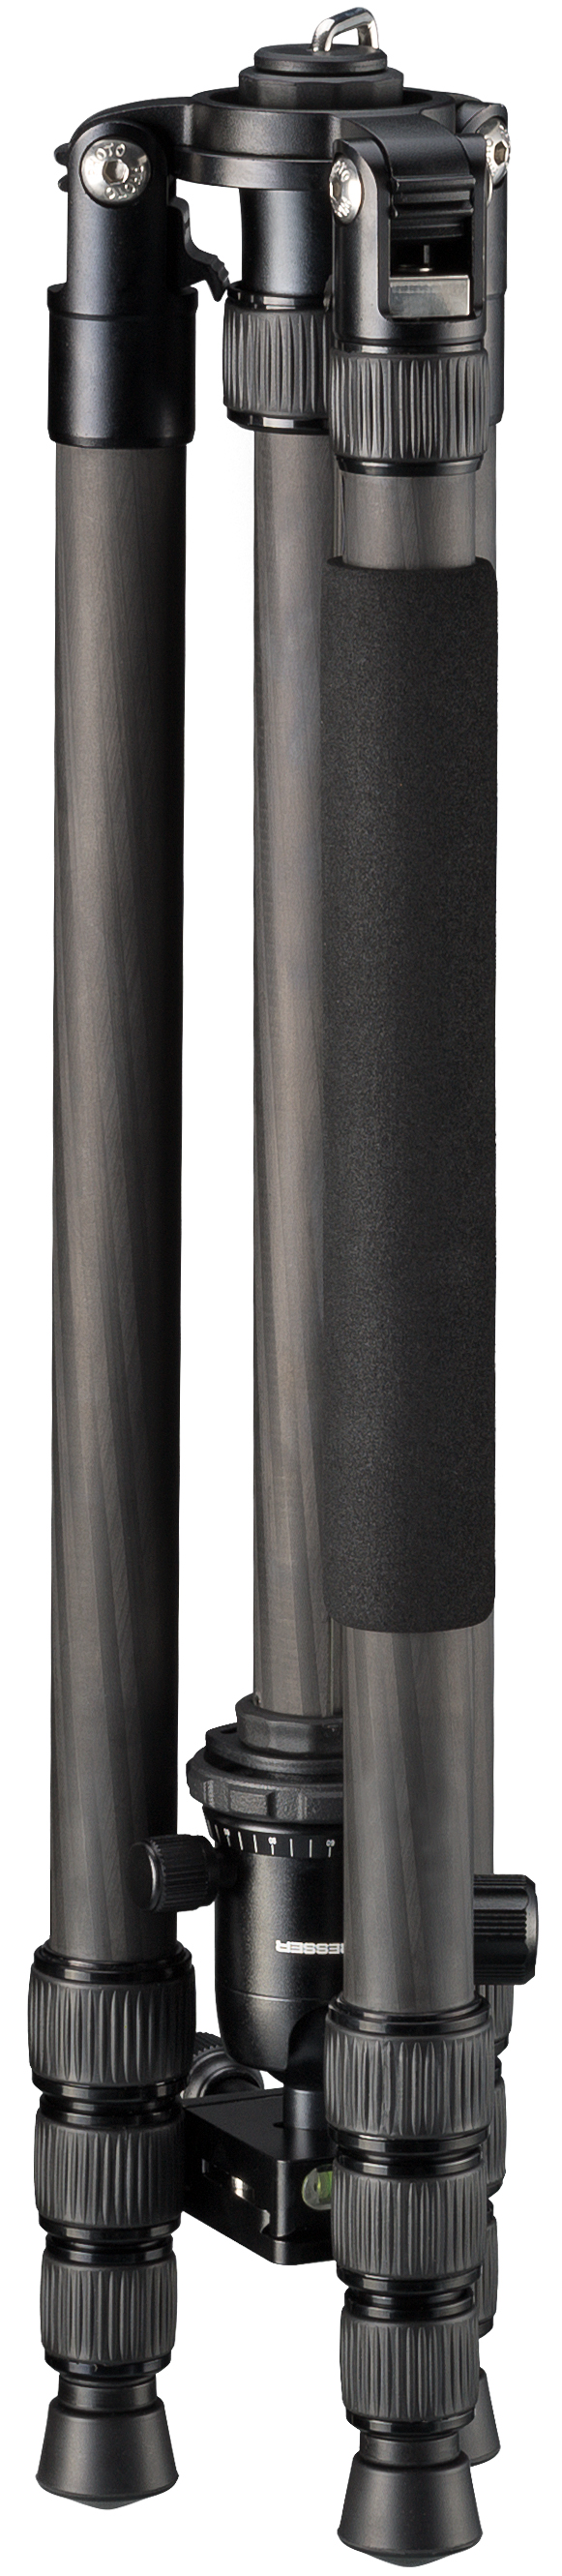 Trípode de Carbono para Cámara BRESSER BR-2504X8C-B1 hasta 10 kg, utilizable como Trípode de Suelo, Monópodo y Trípode de tres Patas